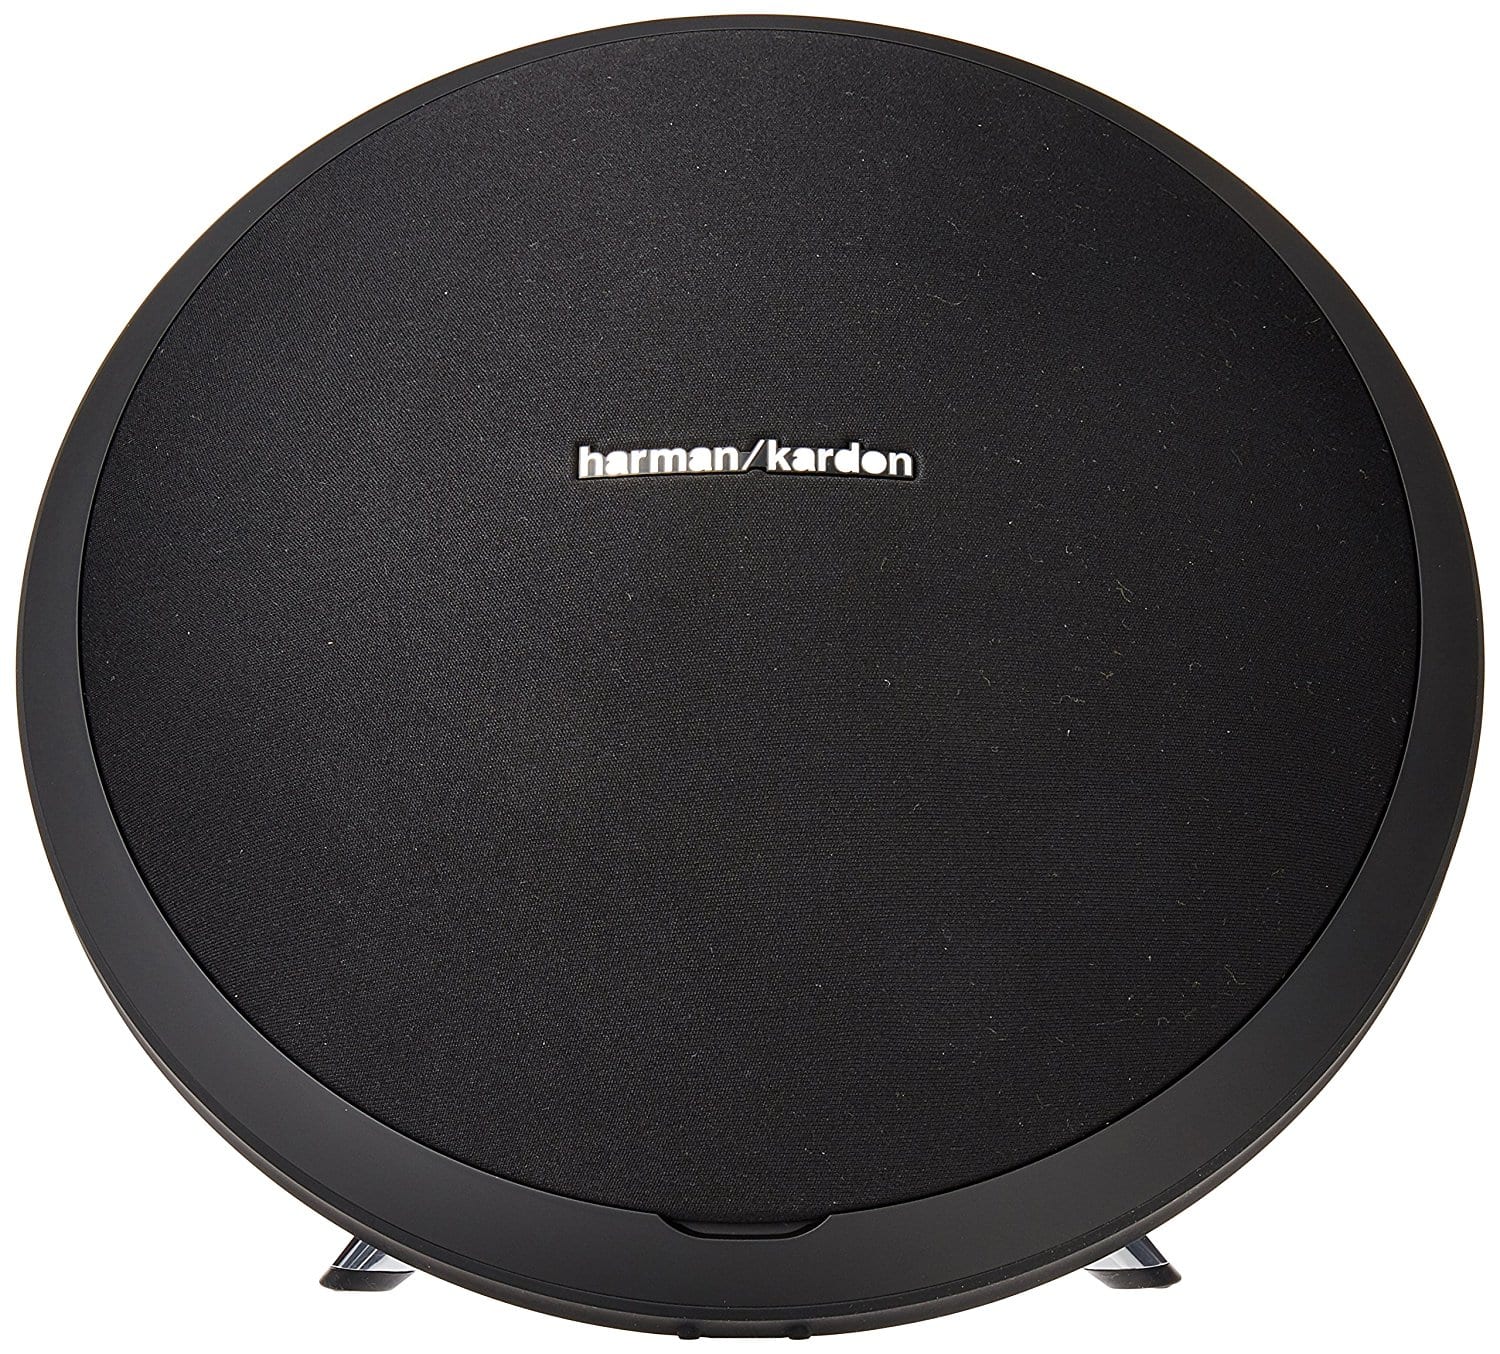 Best Wireless Speakers 2017: Harman